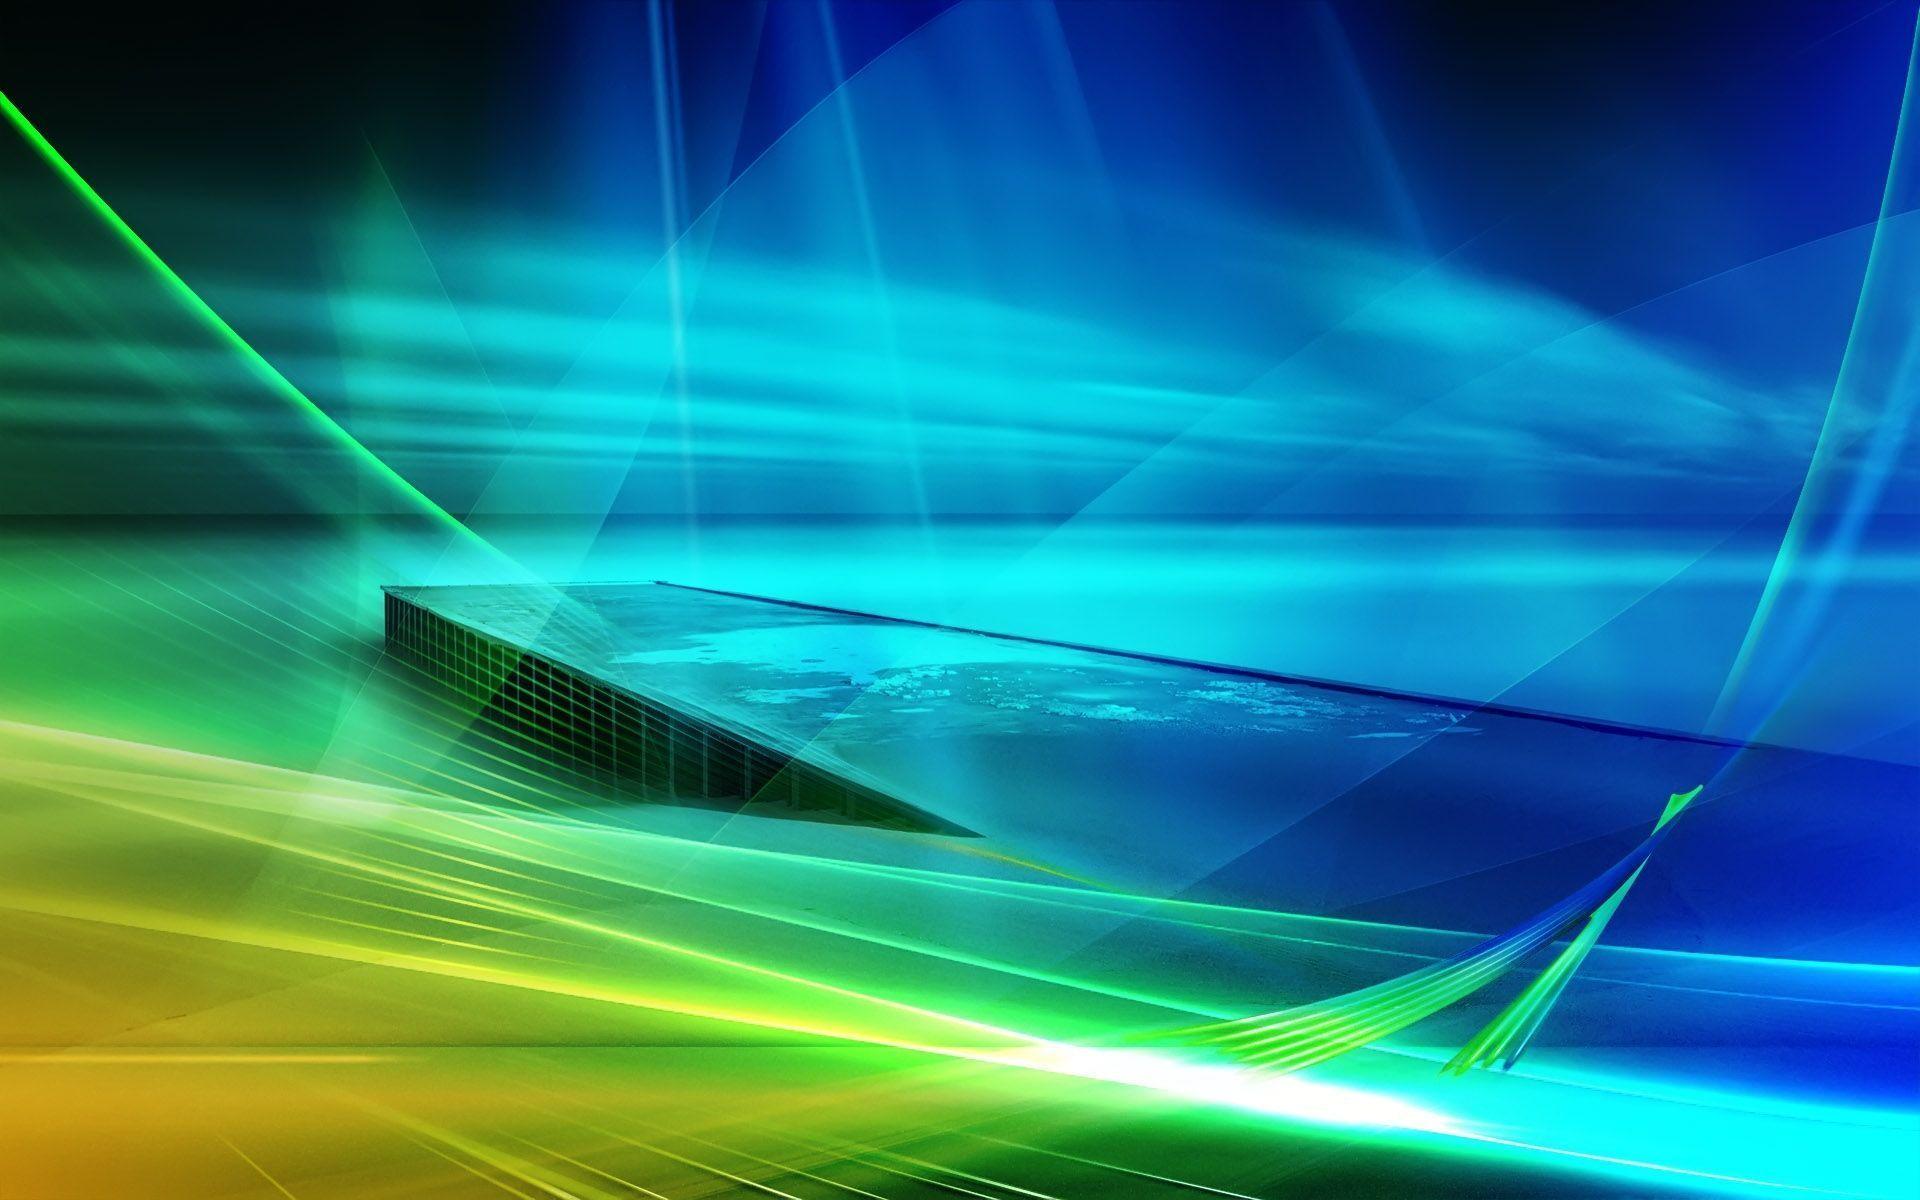 Windows Vista 高清壁纸 | 桌面背景 | 1920x1200 | ID:373730 - Wallpaper Abyss